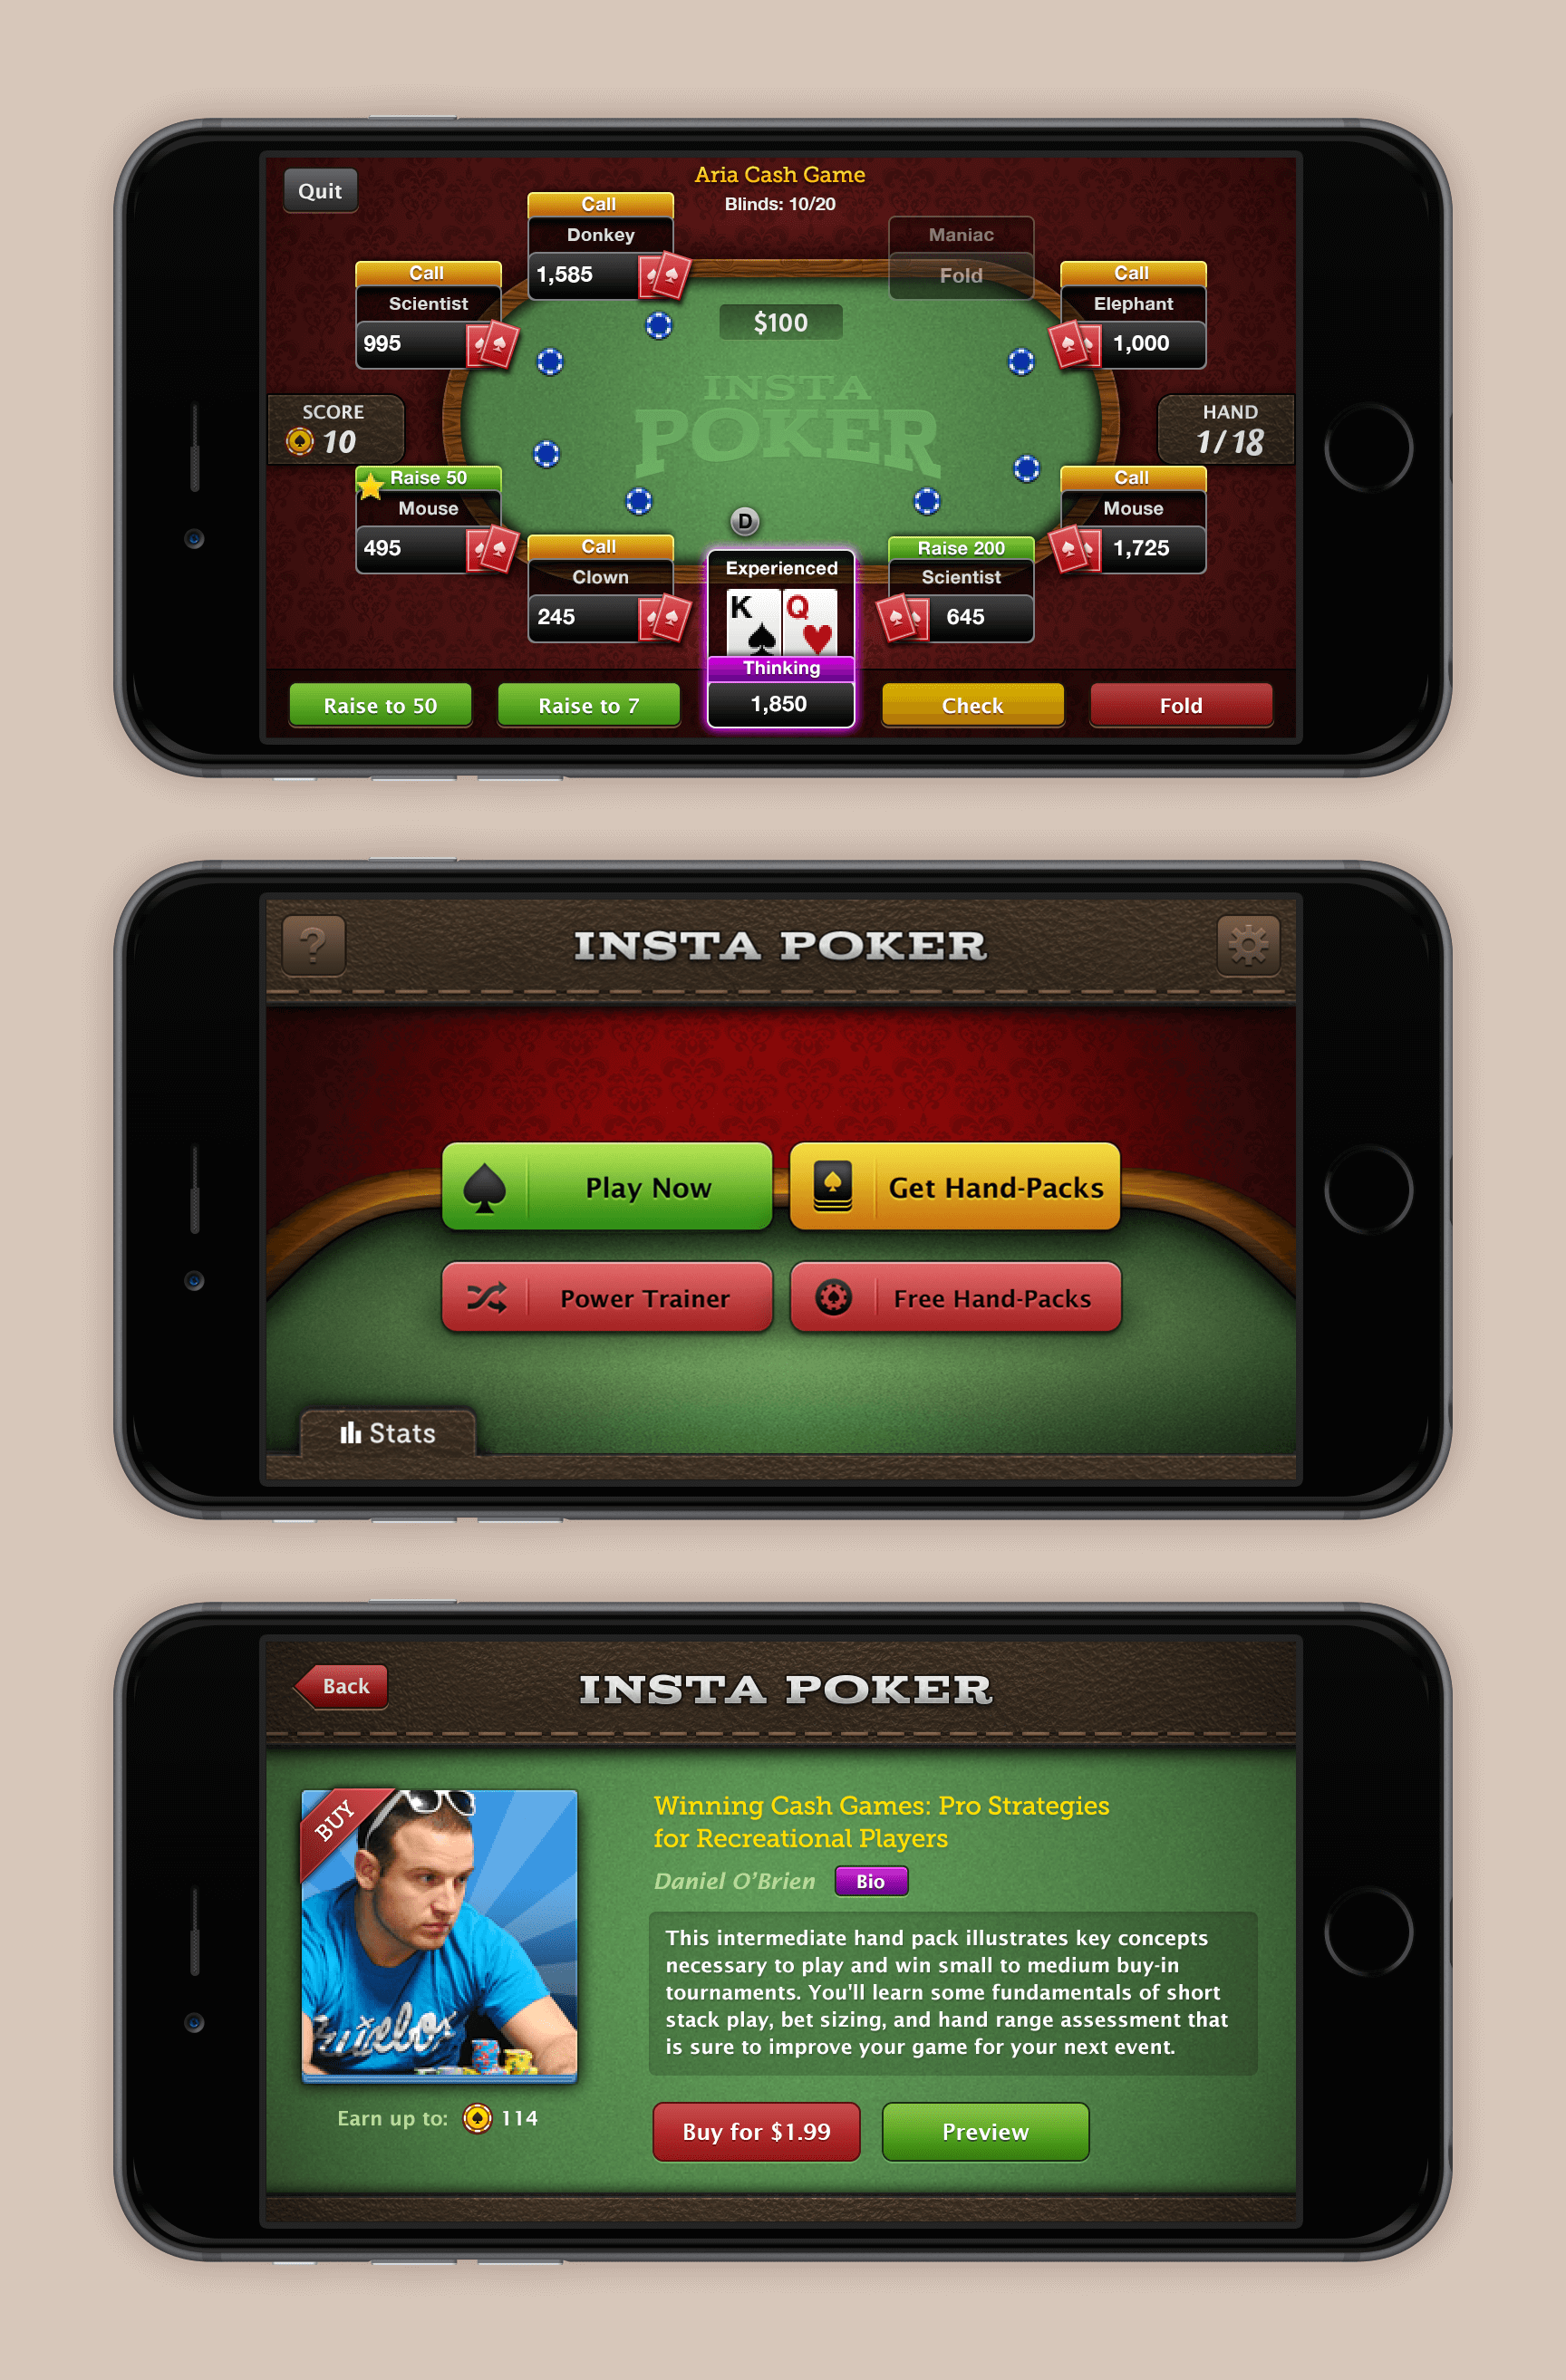 Insta Poker iOS App Design